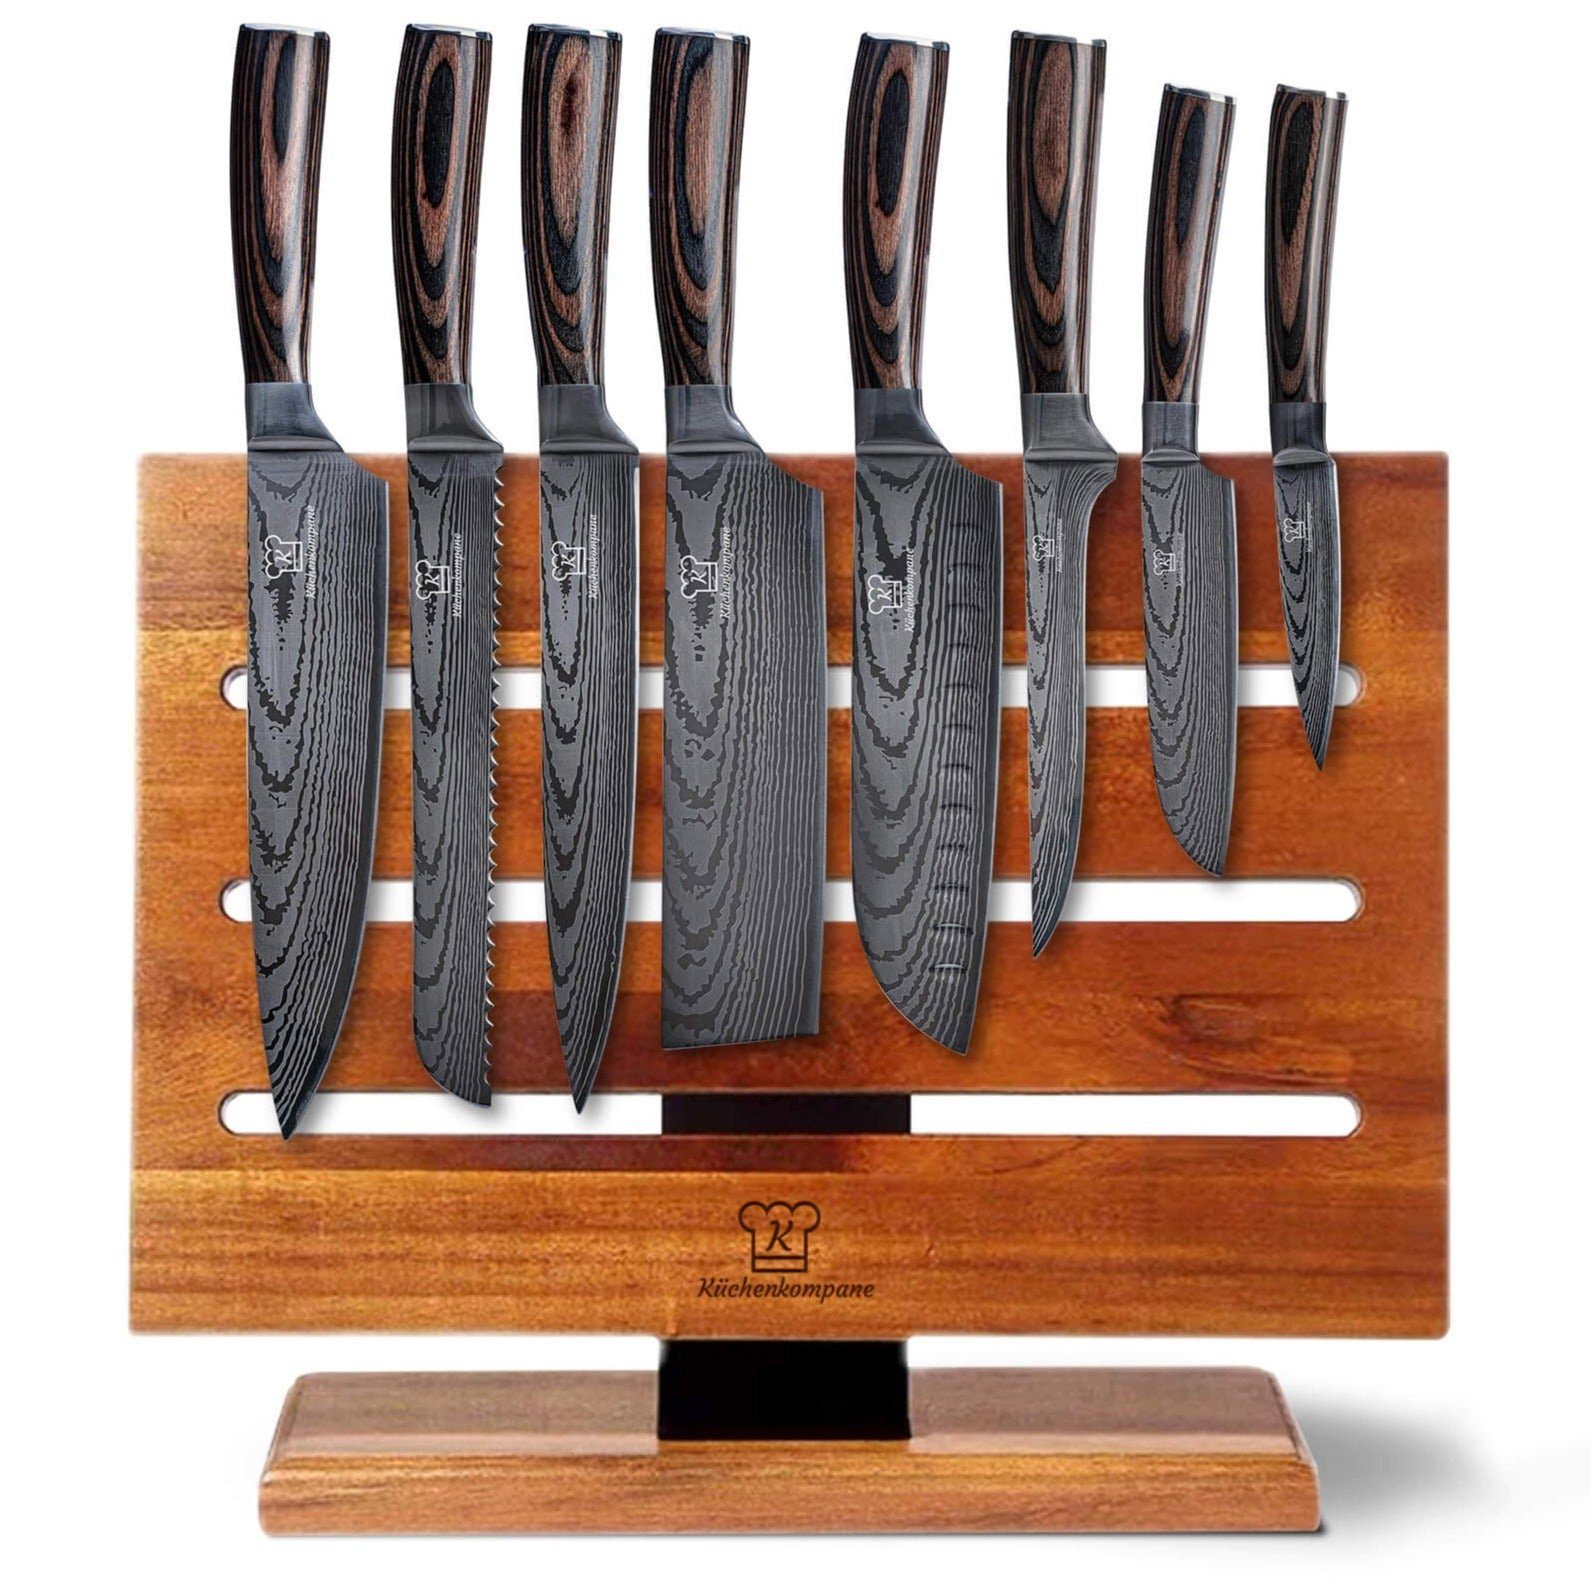 Küchenkompane Magnet-Messerblock »Asiatischer Messerblock, Magnetisch -  Platz für 15 Messer« (1tlg)